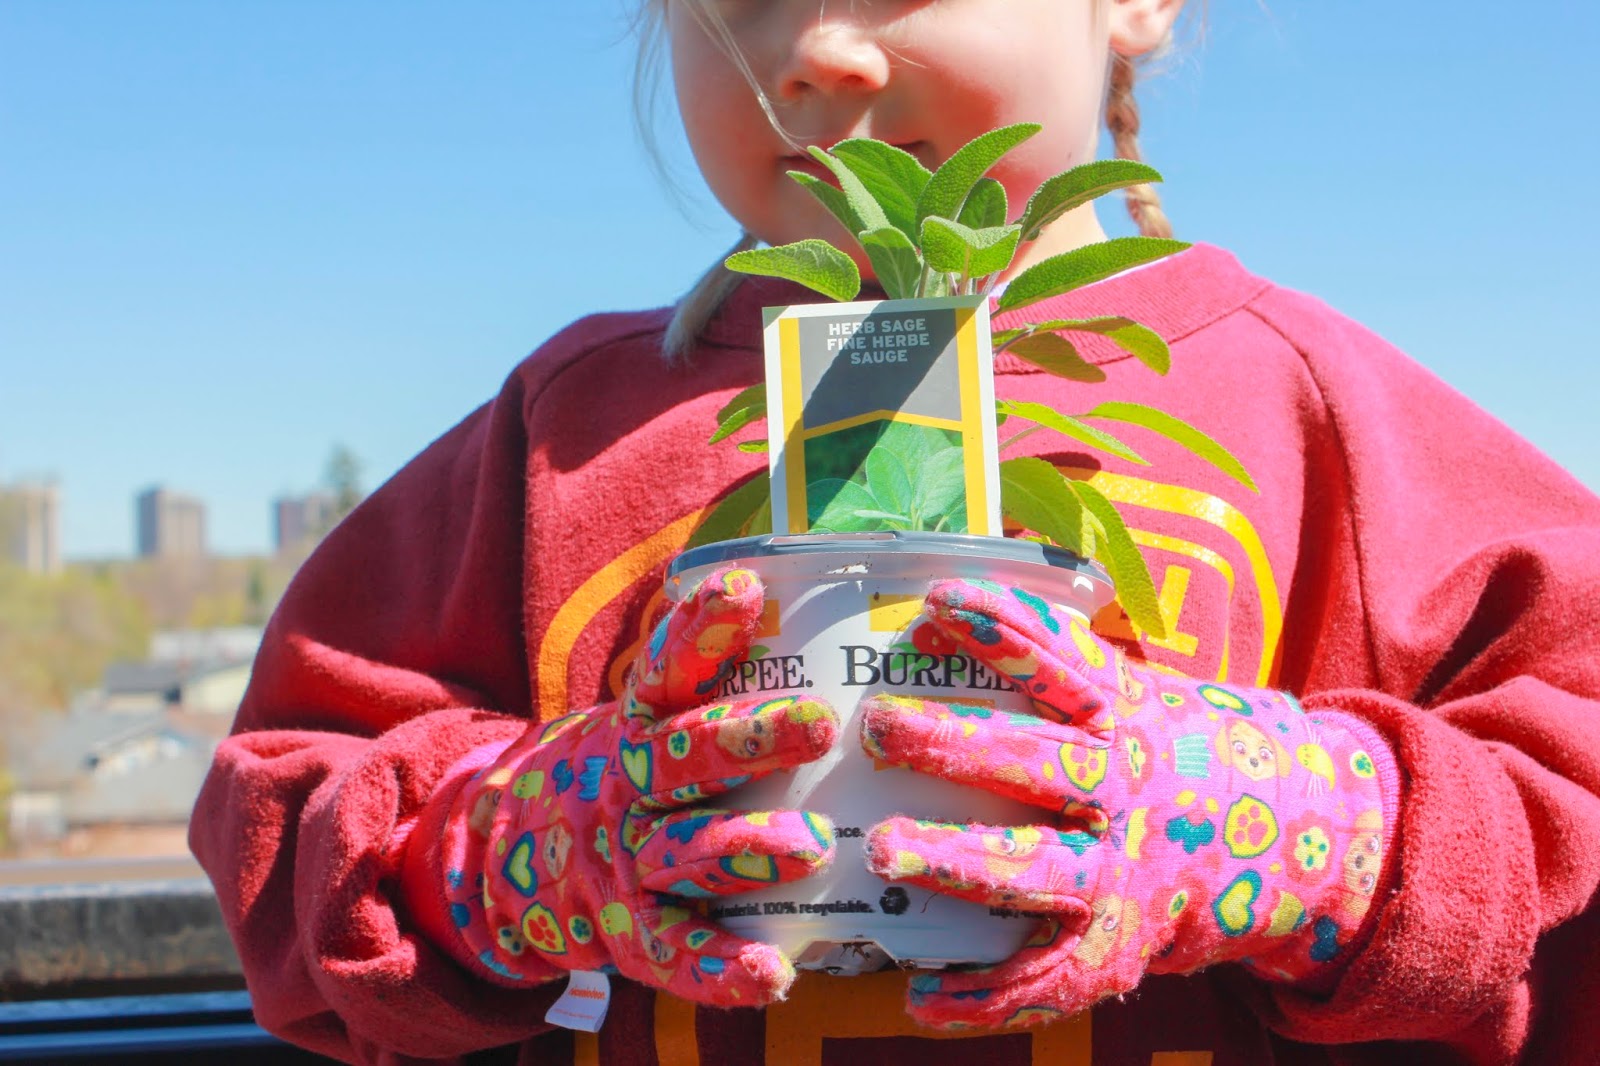 Urban Gardening - Creating a Condo Container Herb & Vegetable Garden